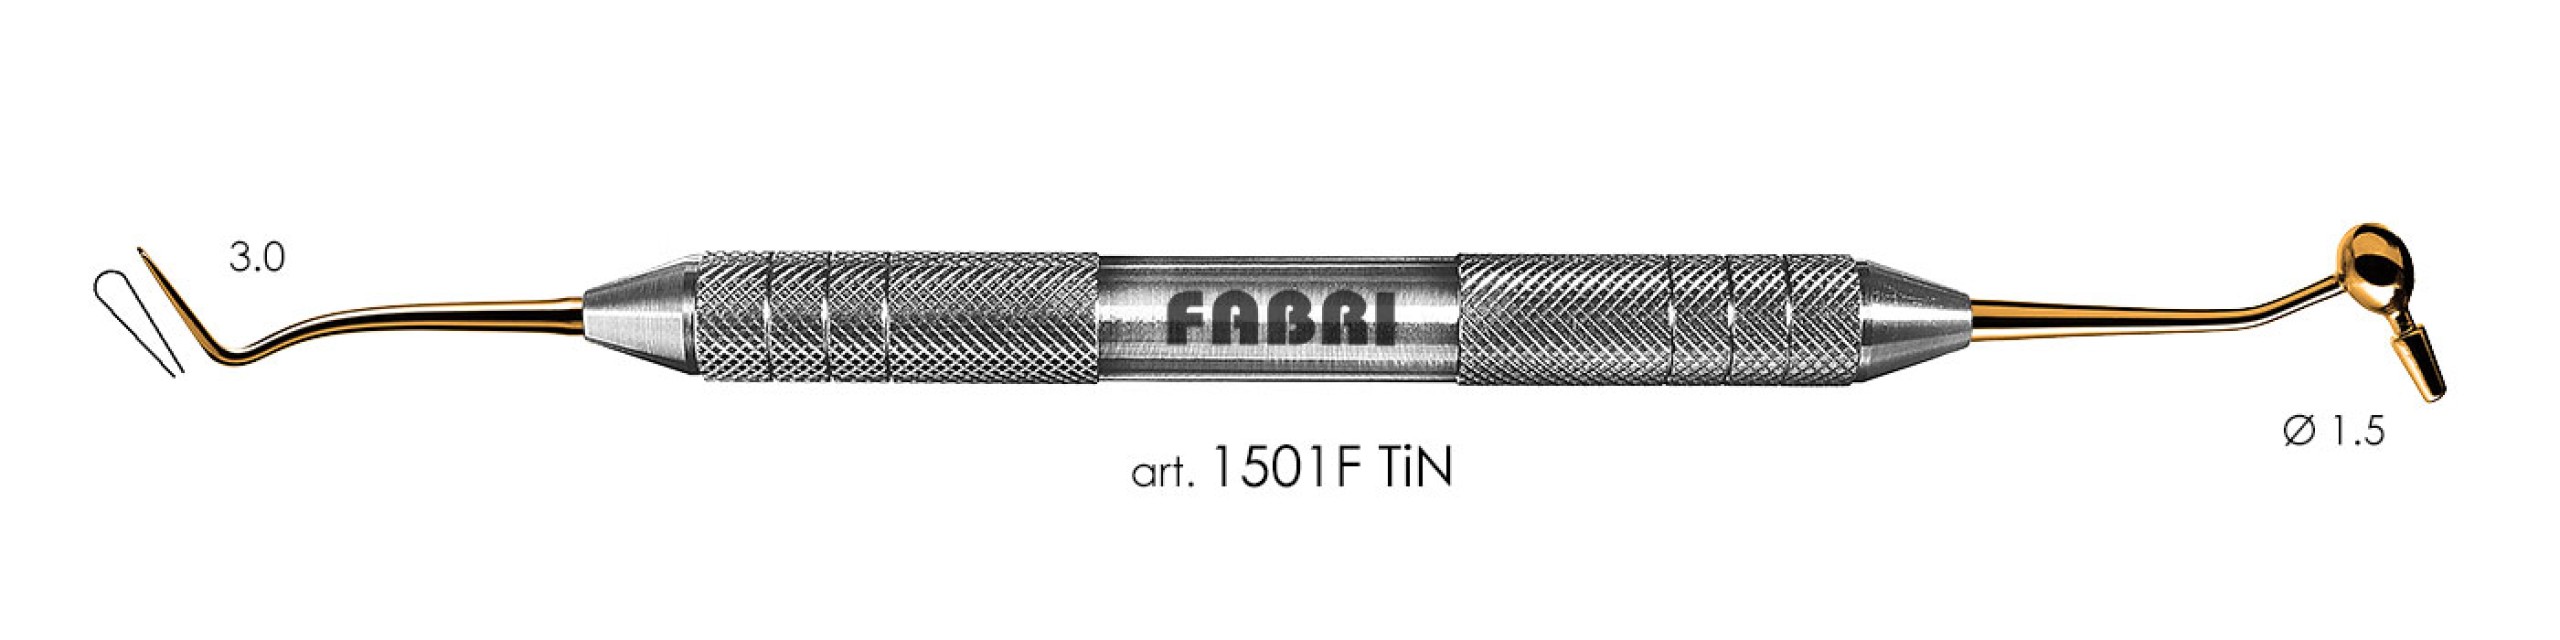 ФАБРИ Fabri  - Штопфер-конденсатор-гладилка. (арт. 1501 F TIN)